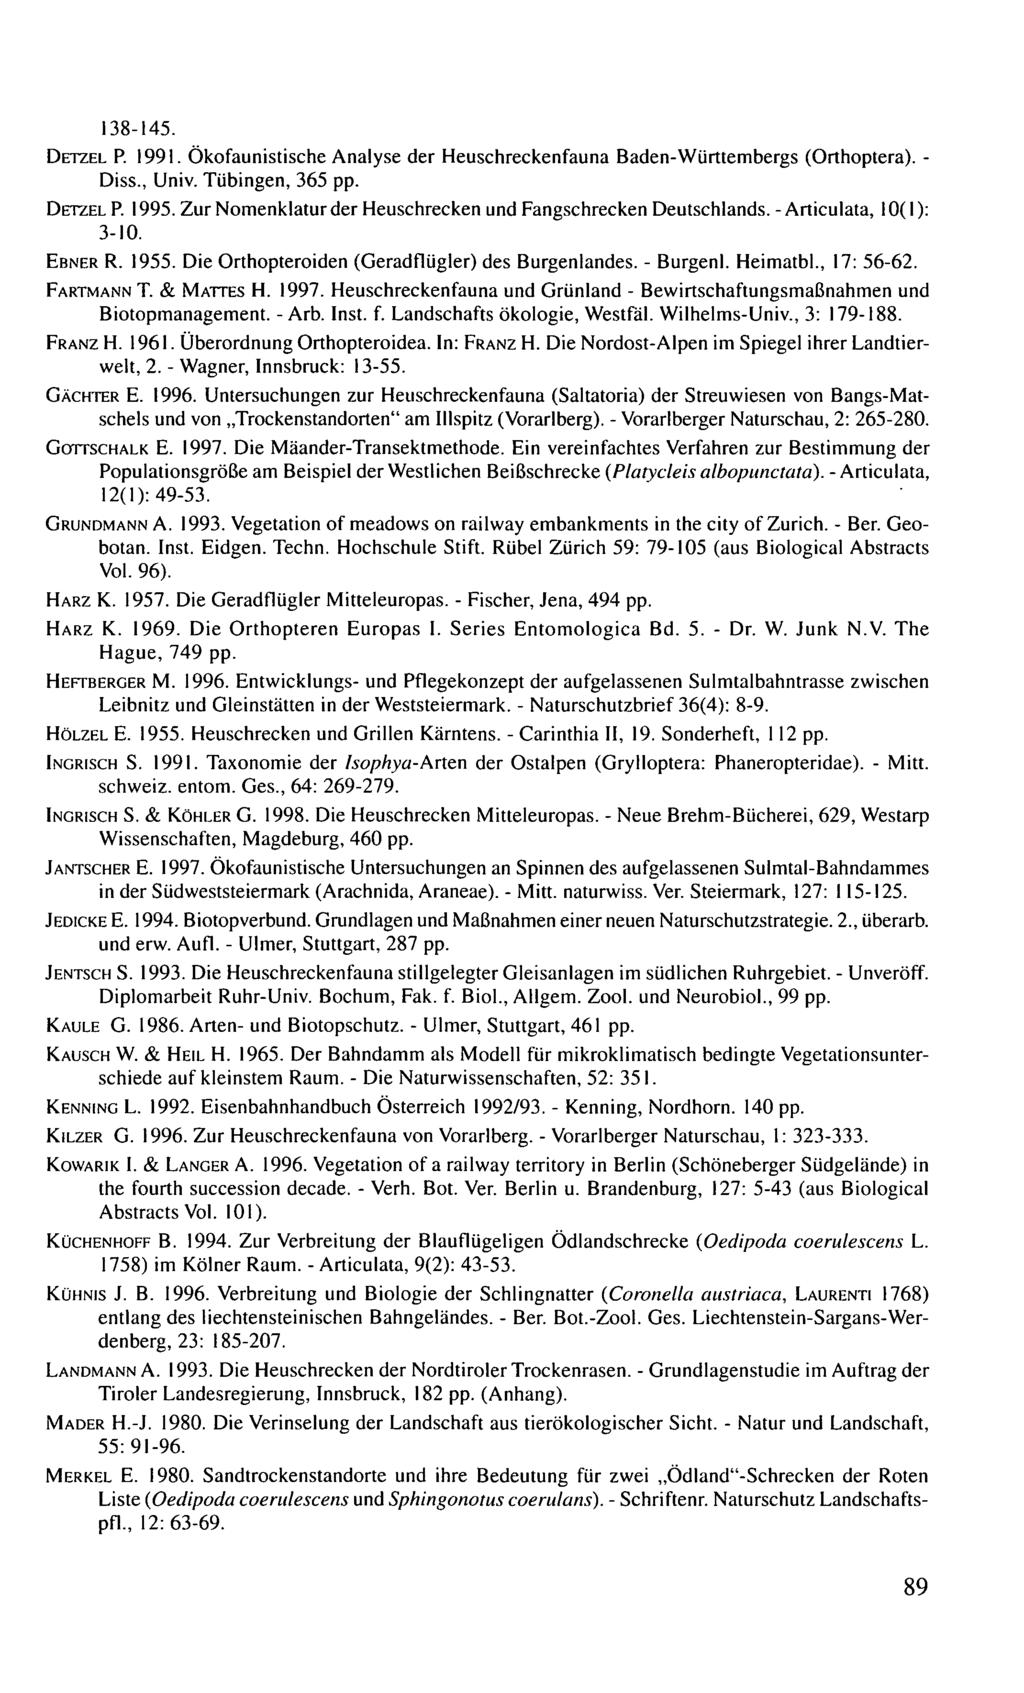 138-145. DETZEL P. 1991. Ökofaunistische Analyse der Heuschreckenfauna Baden-Württembergs (Orthoptera). - Diss., Univ. Tübingen, 365 pp. DETZEL P. 1995.